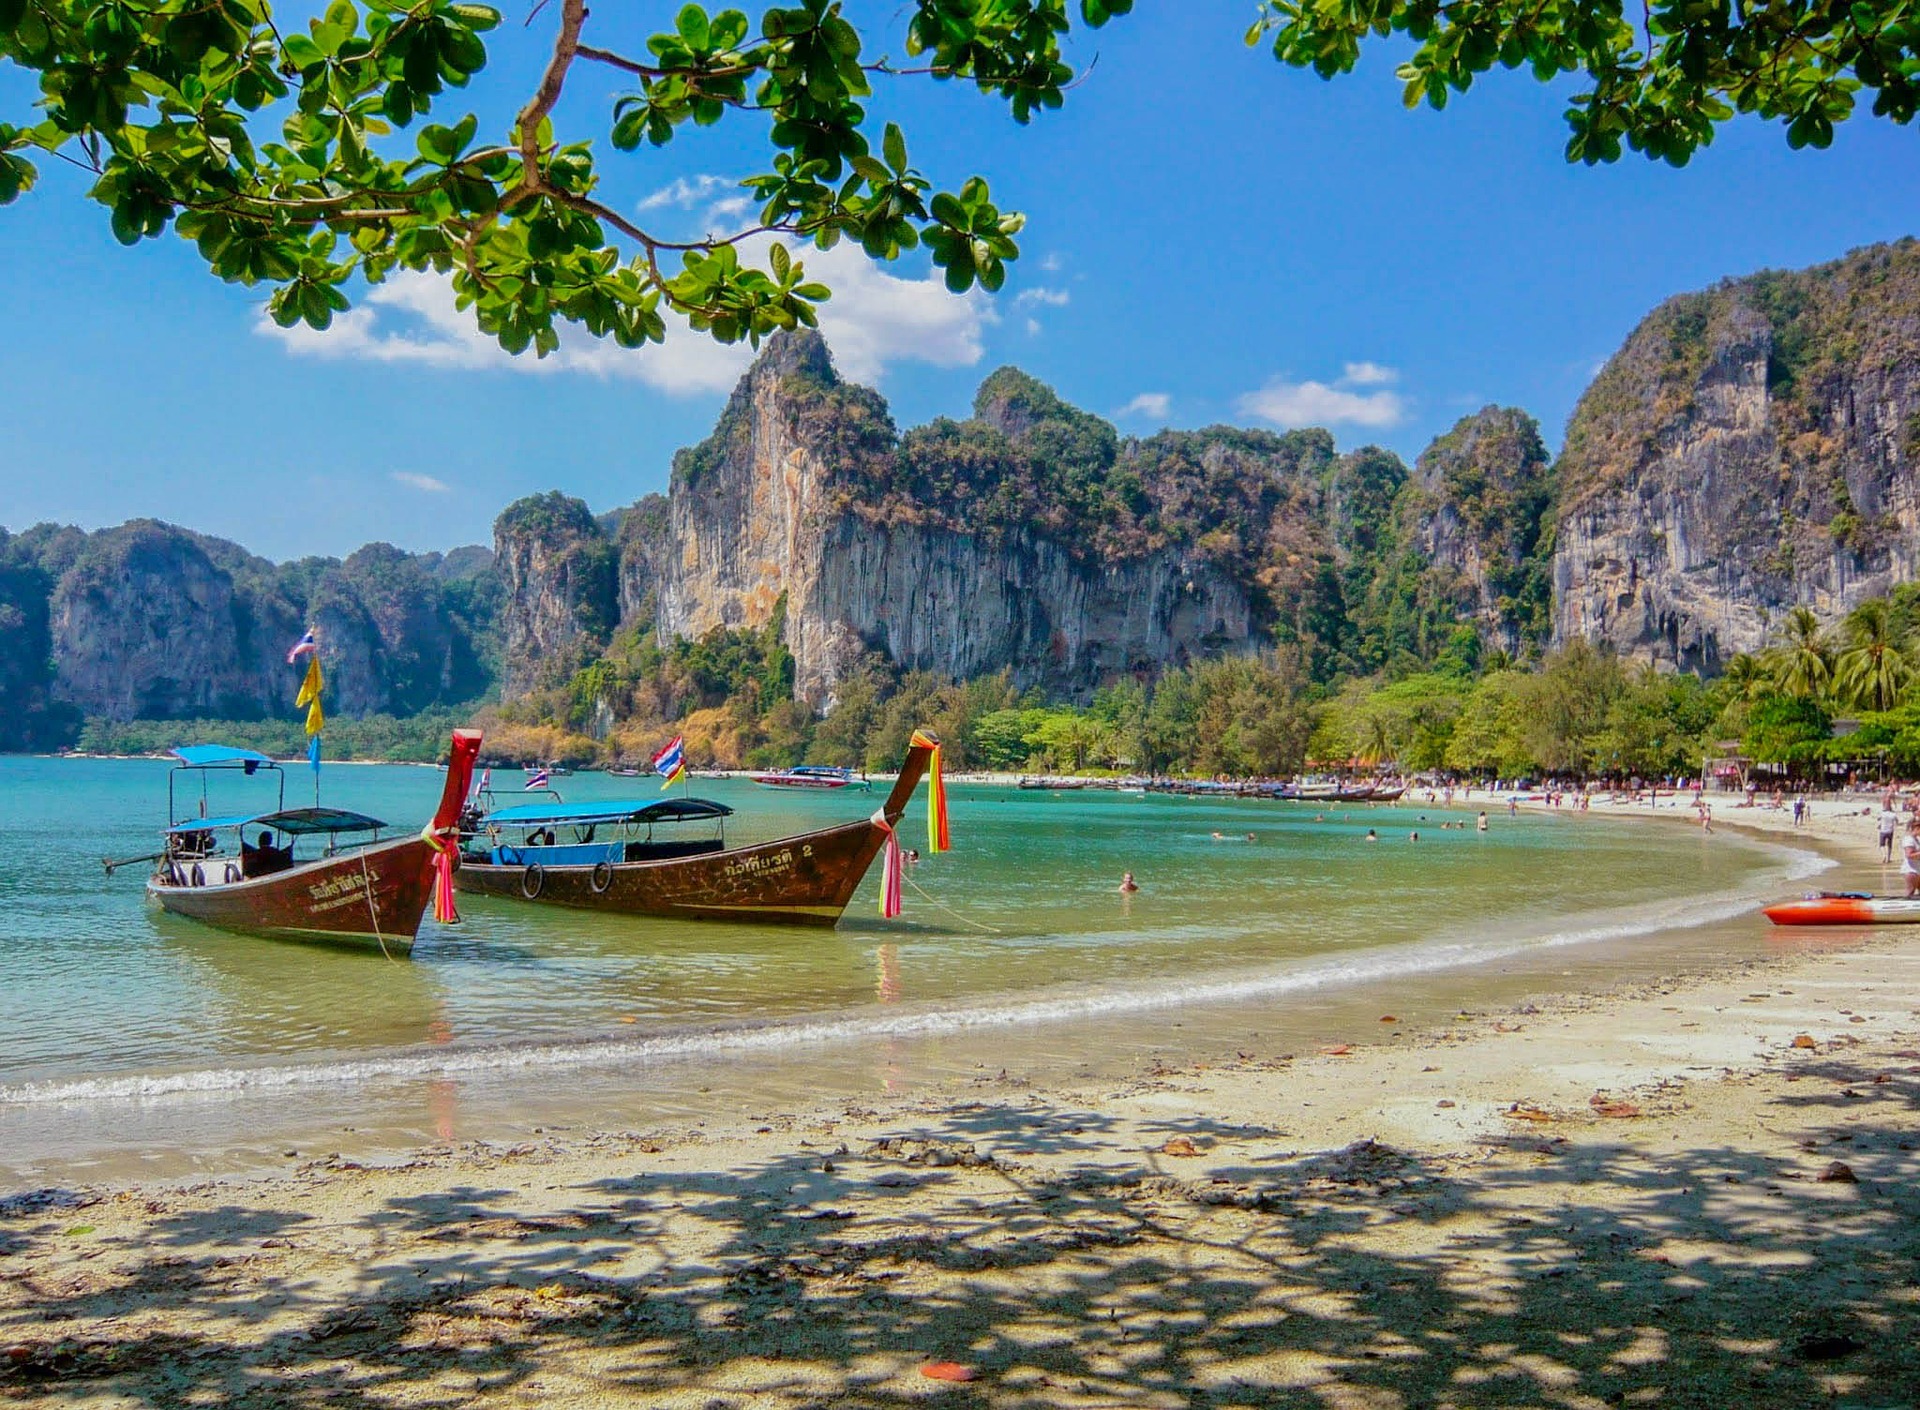 תאילנד: נופים עוצרי נשימה וטיול חווייתי!